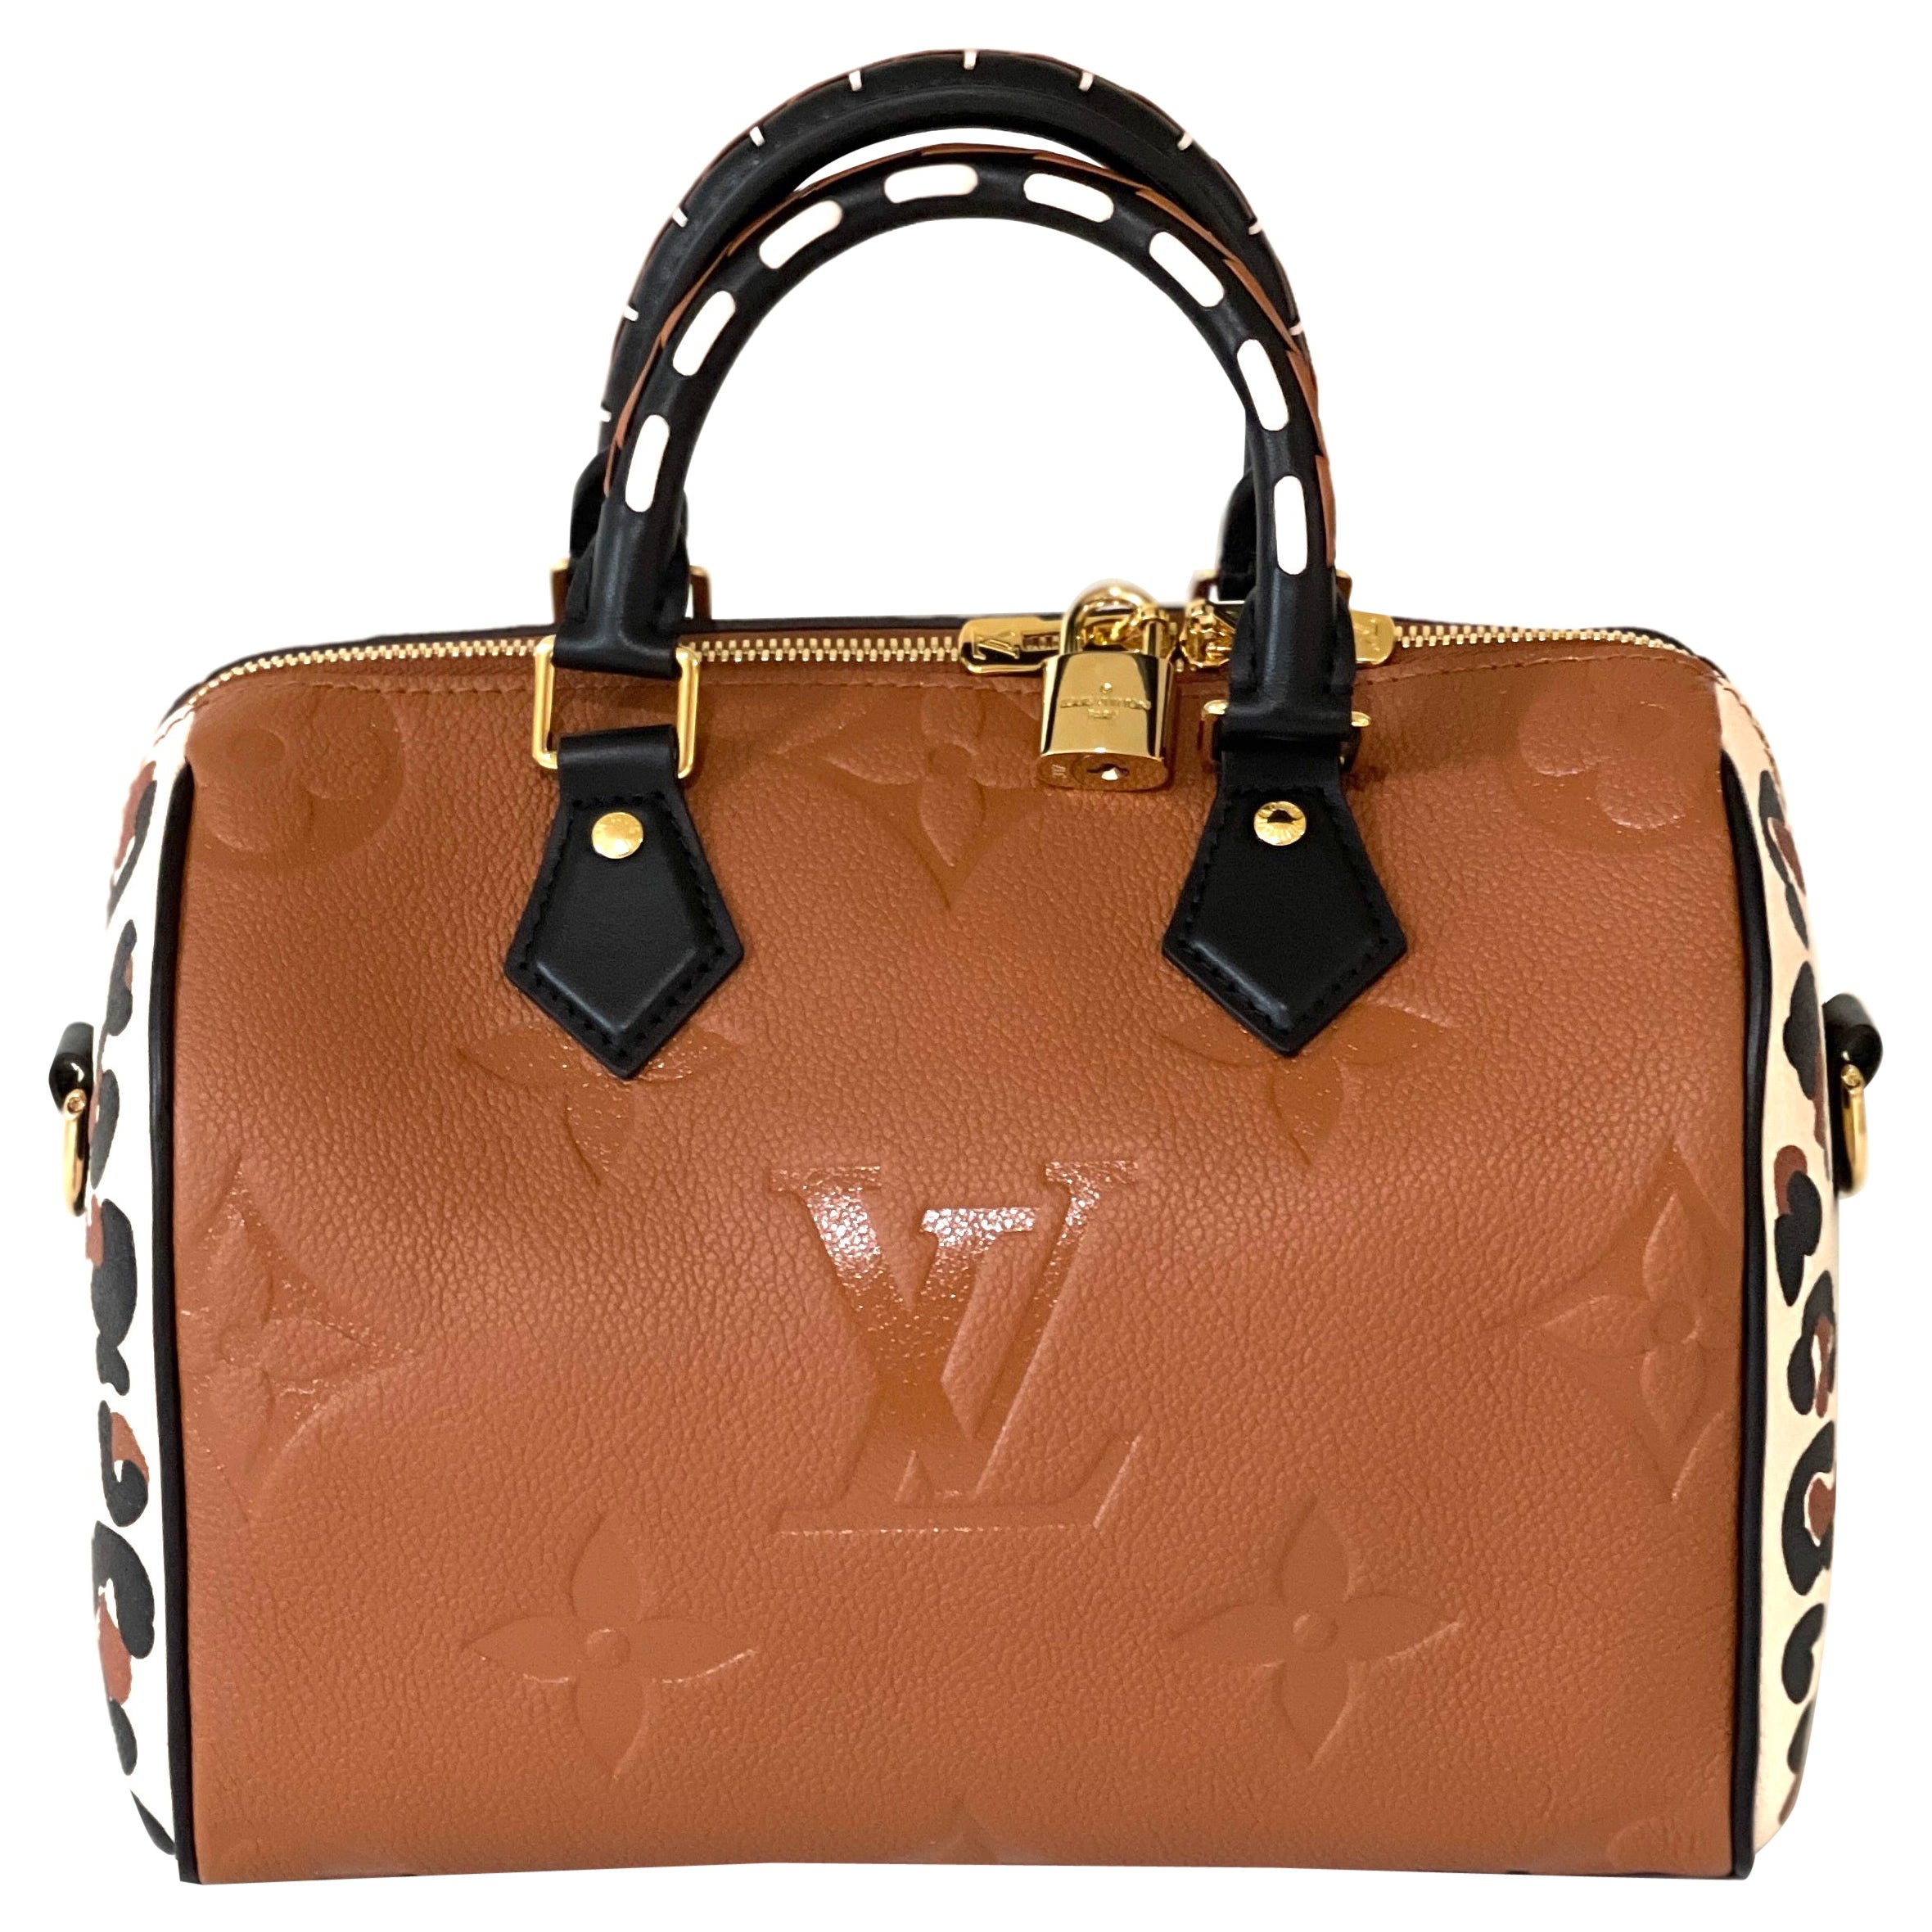 Speedy Louis Vuitton Handbag  Buy or Sell your LV handbags - Vestiaire  Collective